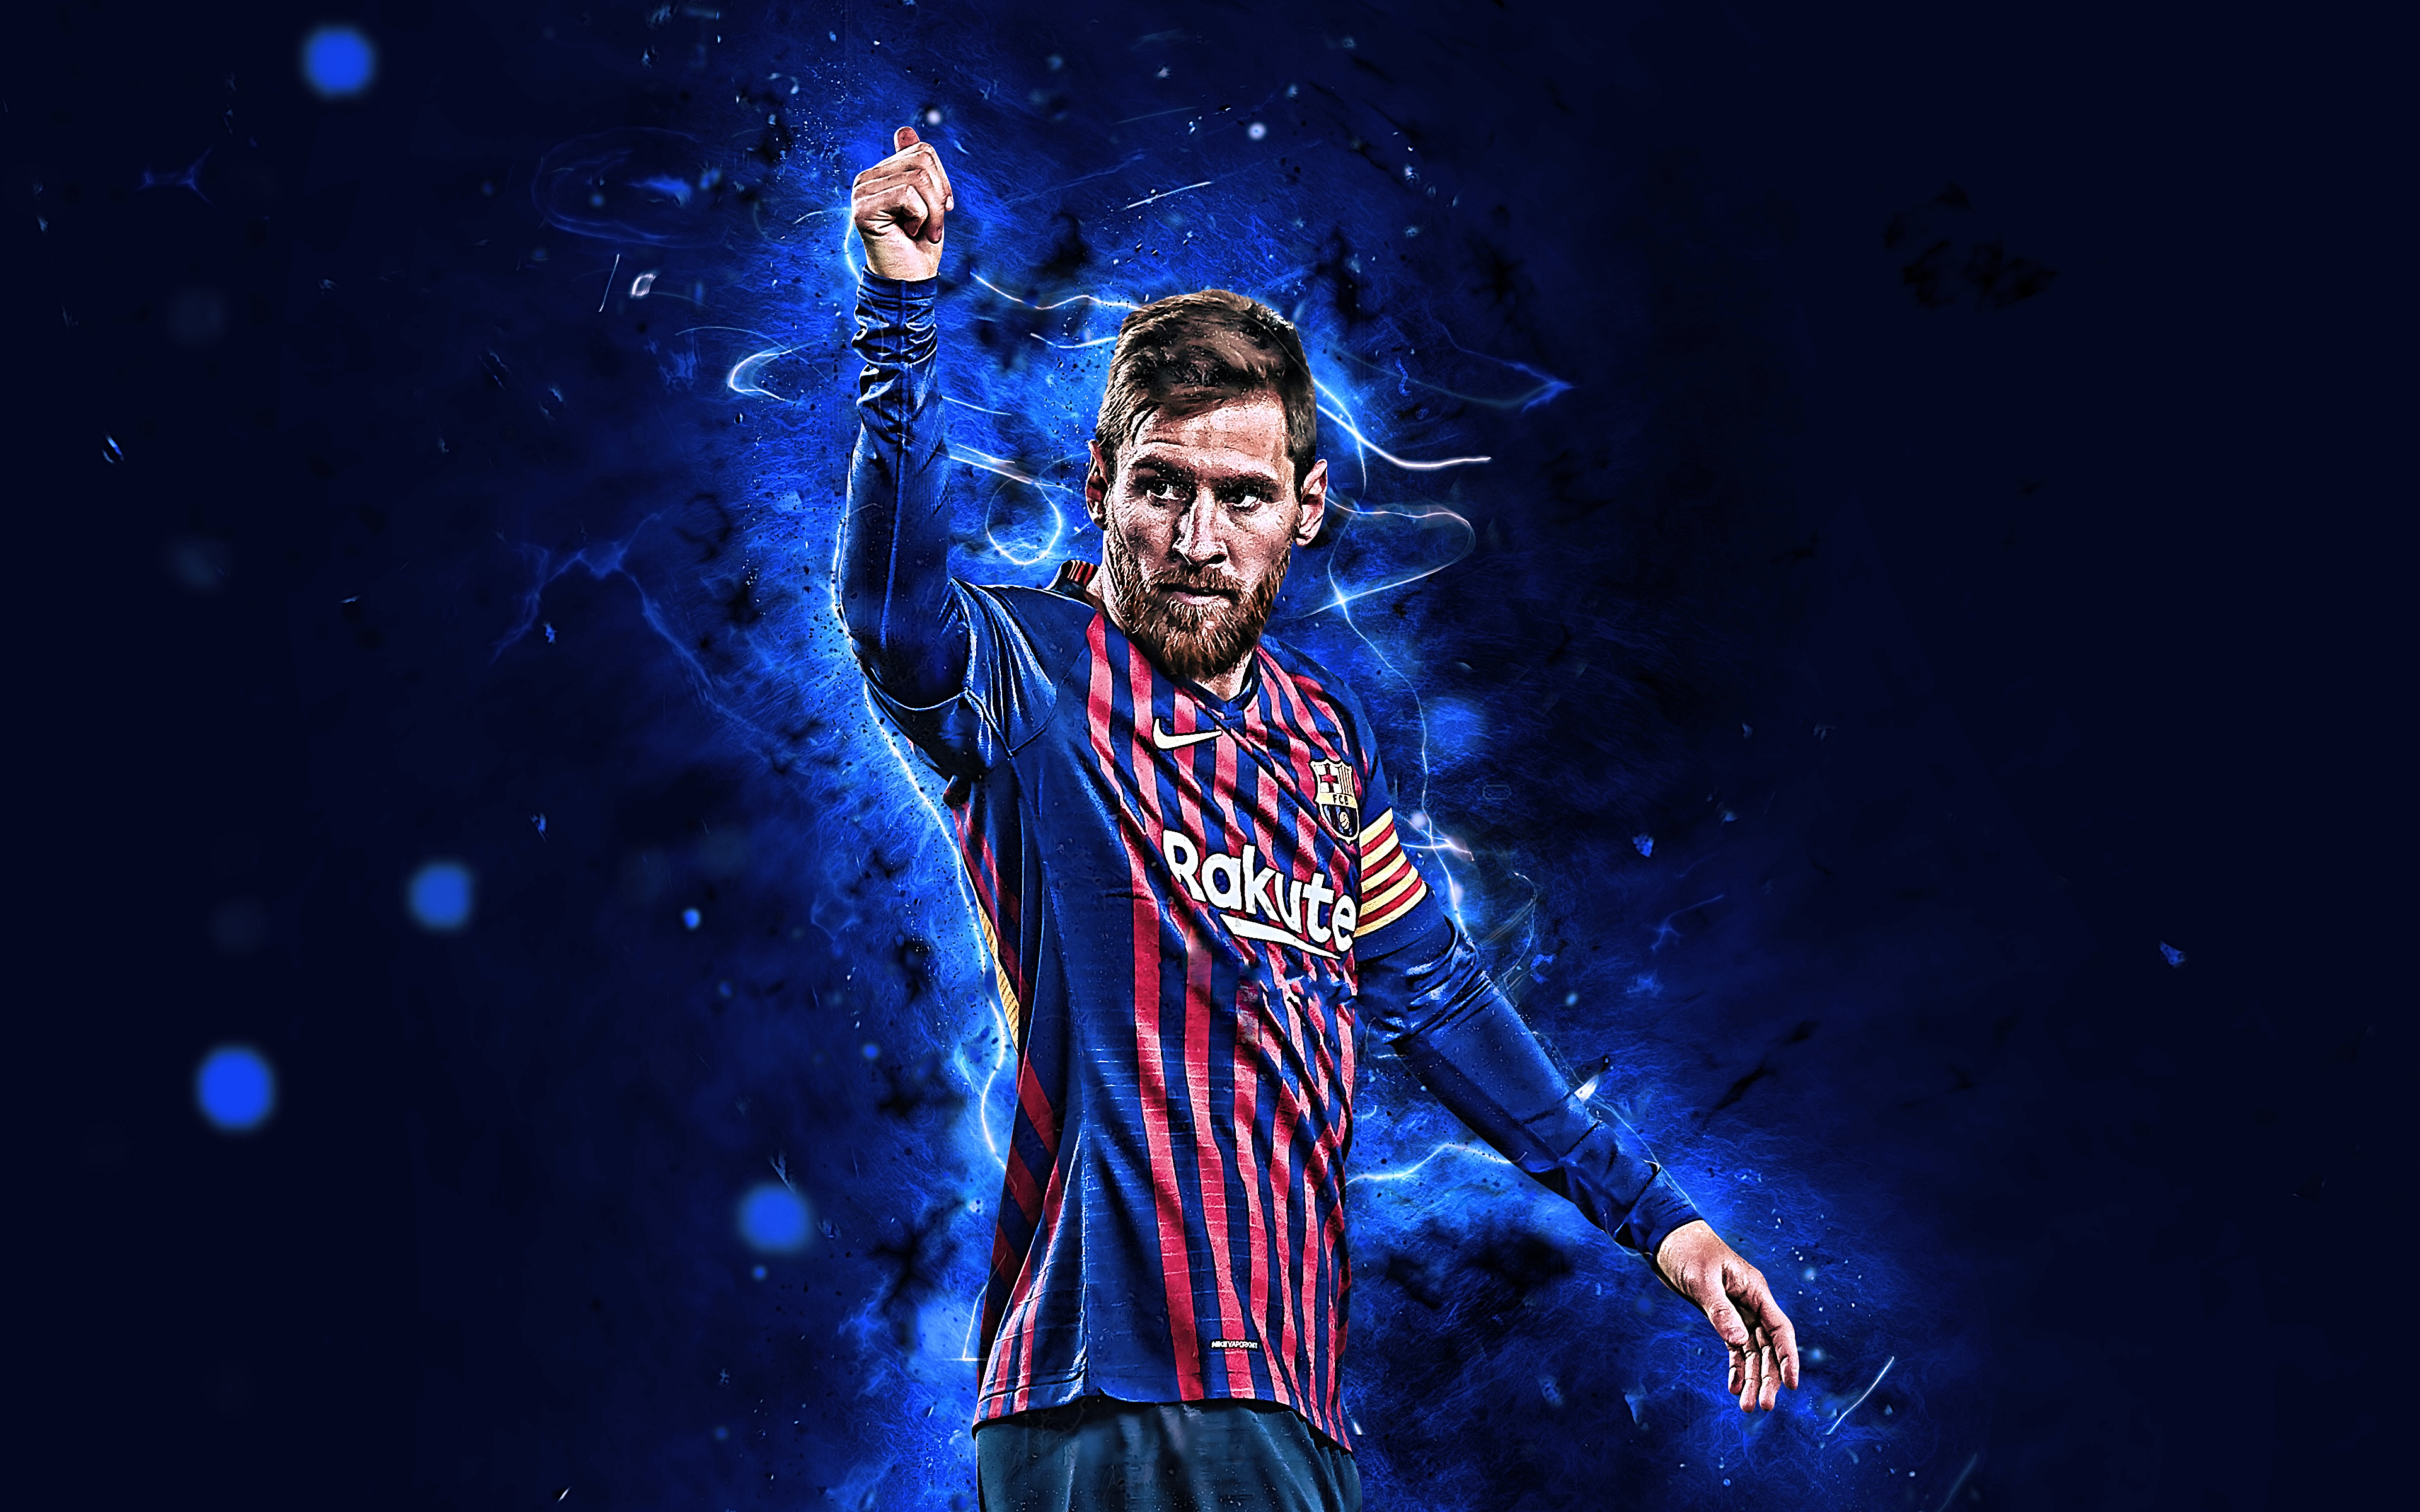 Hình nền desktop HD của Lionel Messi sẽ đem đến cho bạn sự hoàn hảo về chất lượng hình ảnh sống động và độ phân giải cao. Nét bút vẽ tỉ mỉ và chính xác cùng sự tinh tế đến từ các nhà thiết kế đã tạo nên những bức hình nền chất lượng cao này.